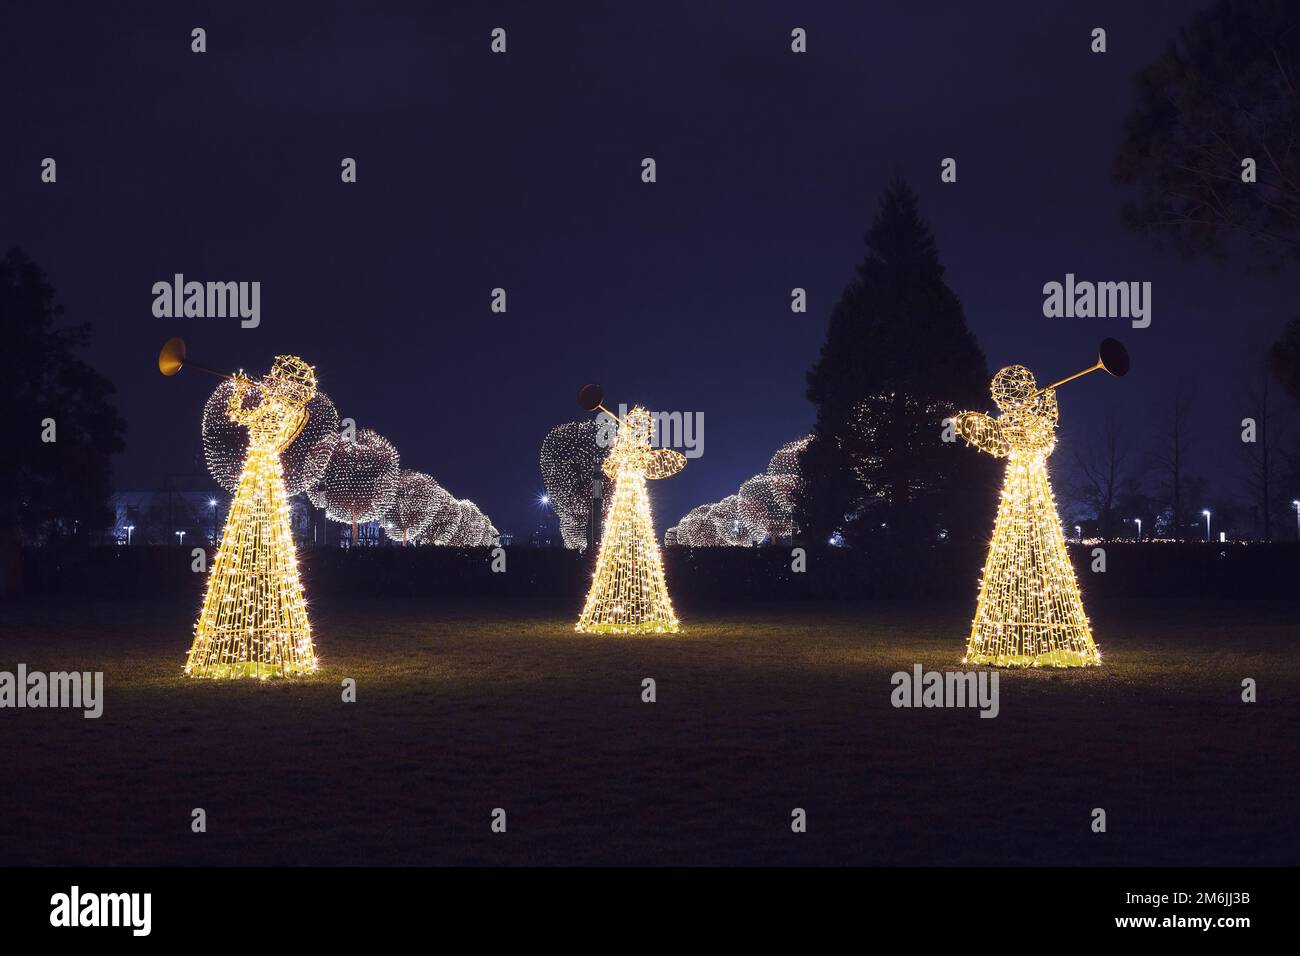 Tres ángeles de Navidad de guirnaldas luminosas iluminan la zona de paseo del parque con el telón de fondo de árboles luminosos redondos en n Foto de stock